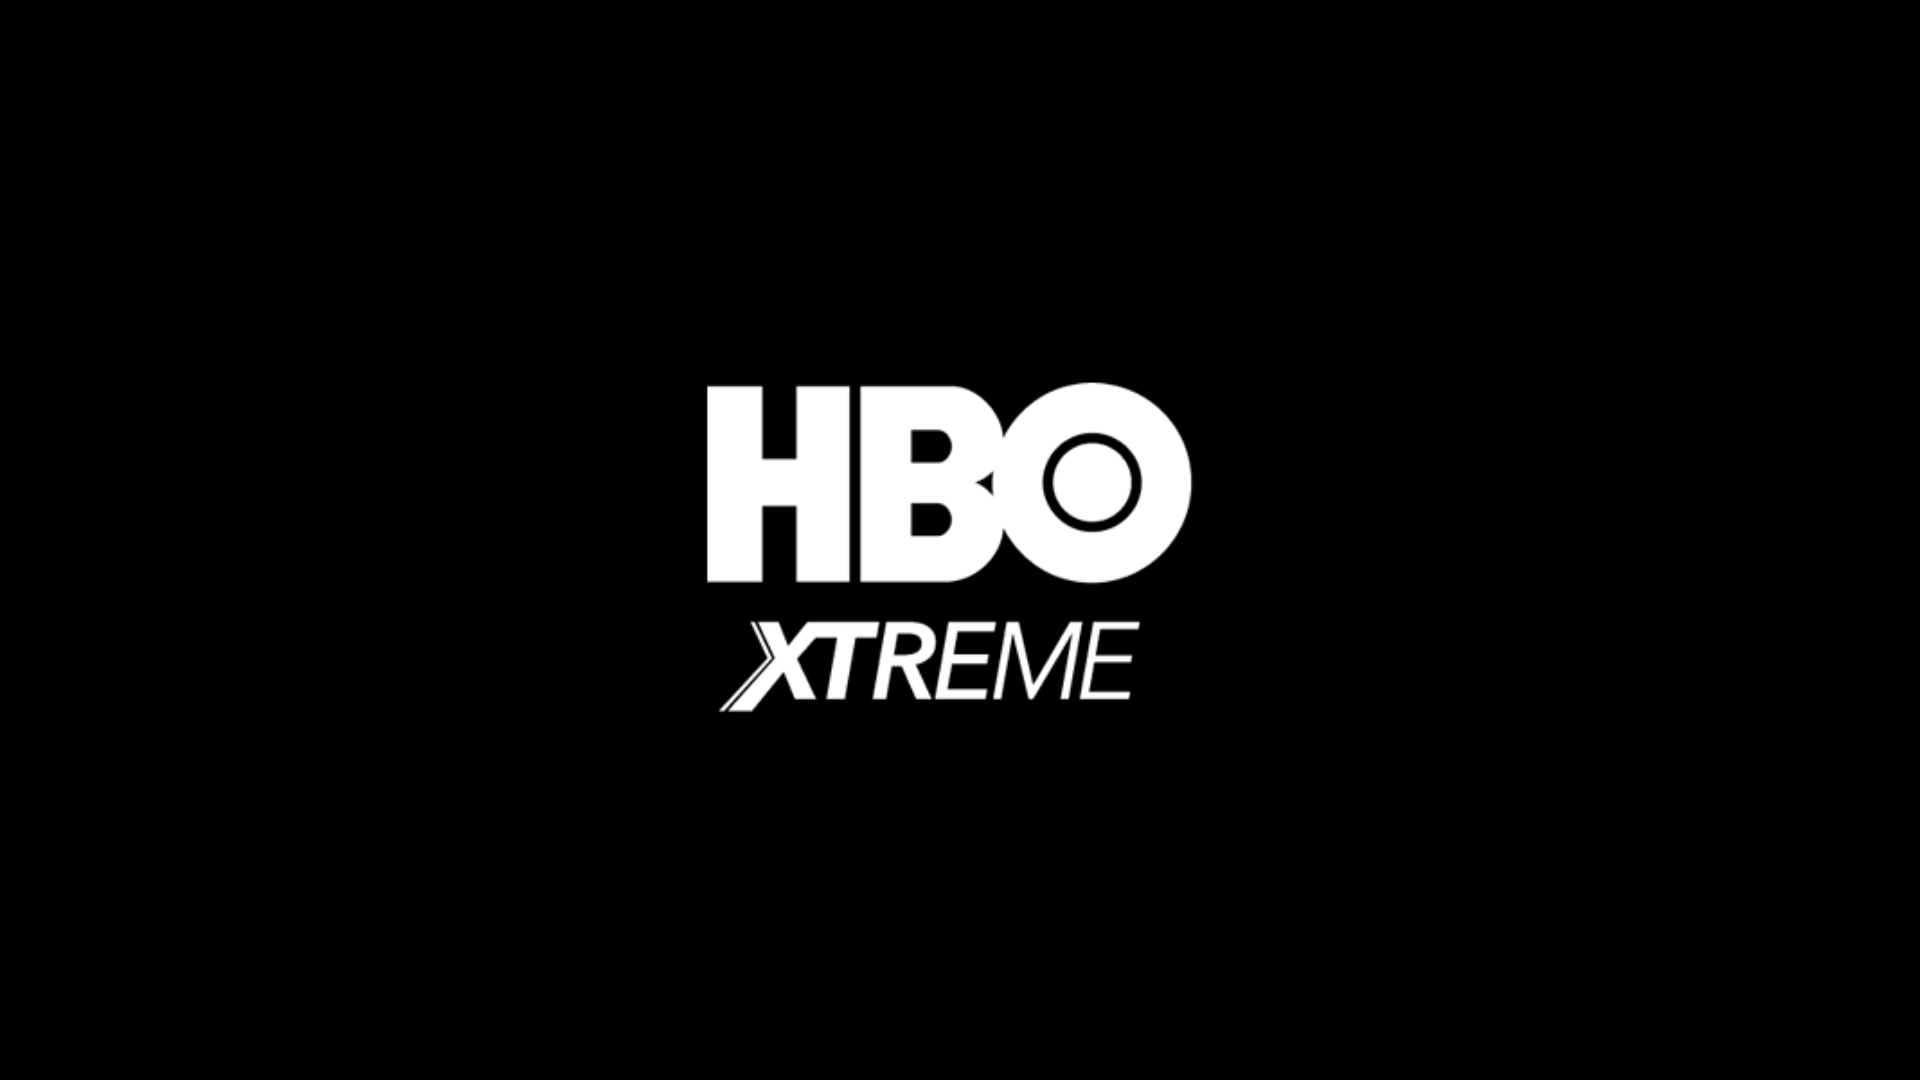 HBO Xtreme ao vivo,HBO Xtreme online,assistir HBO Xtreme,assistir HBO Xtreme ao vivo,assistir HBO Xtreme online,HBO Xtreme gratis,assistir HBO Xtreme gratis,ao vivo online,ao vivo gratis,ver HBO Xtreme,ver HBO Xtreme ao vivo,ver HBO Xtreme online,24 horas,24h,multicanais,piratetv,piratatvs.com